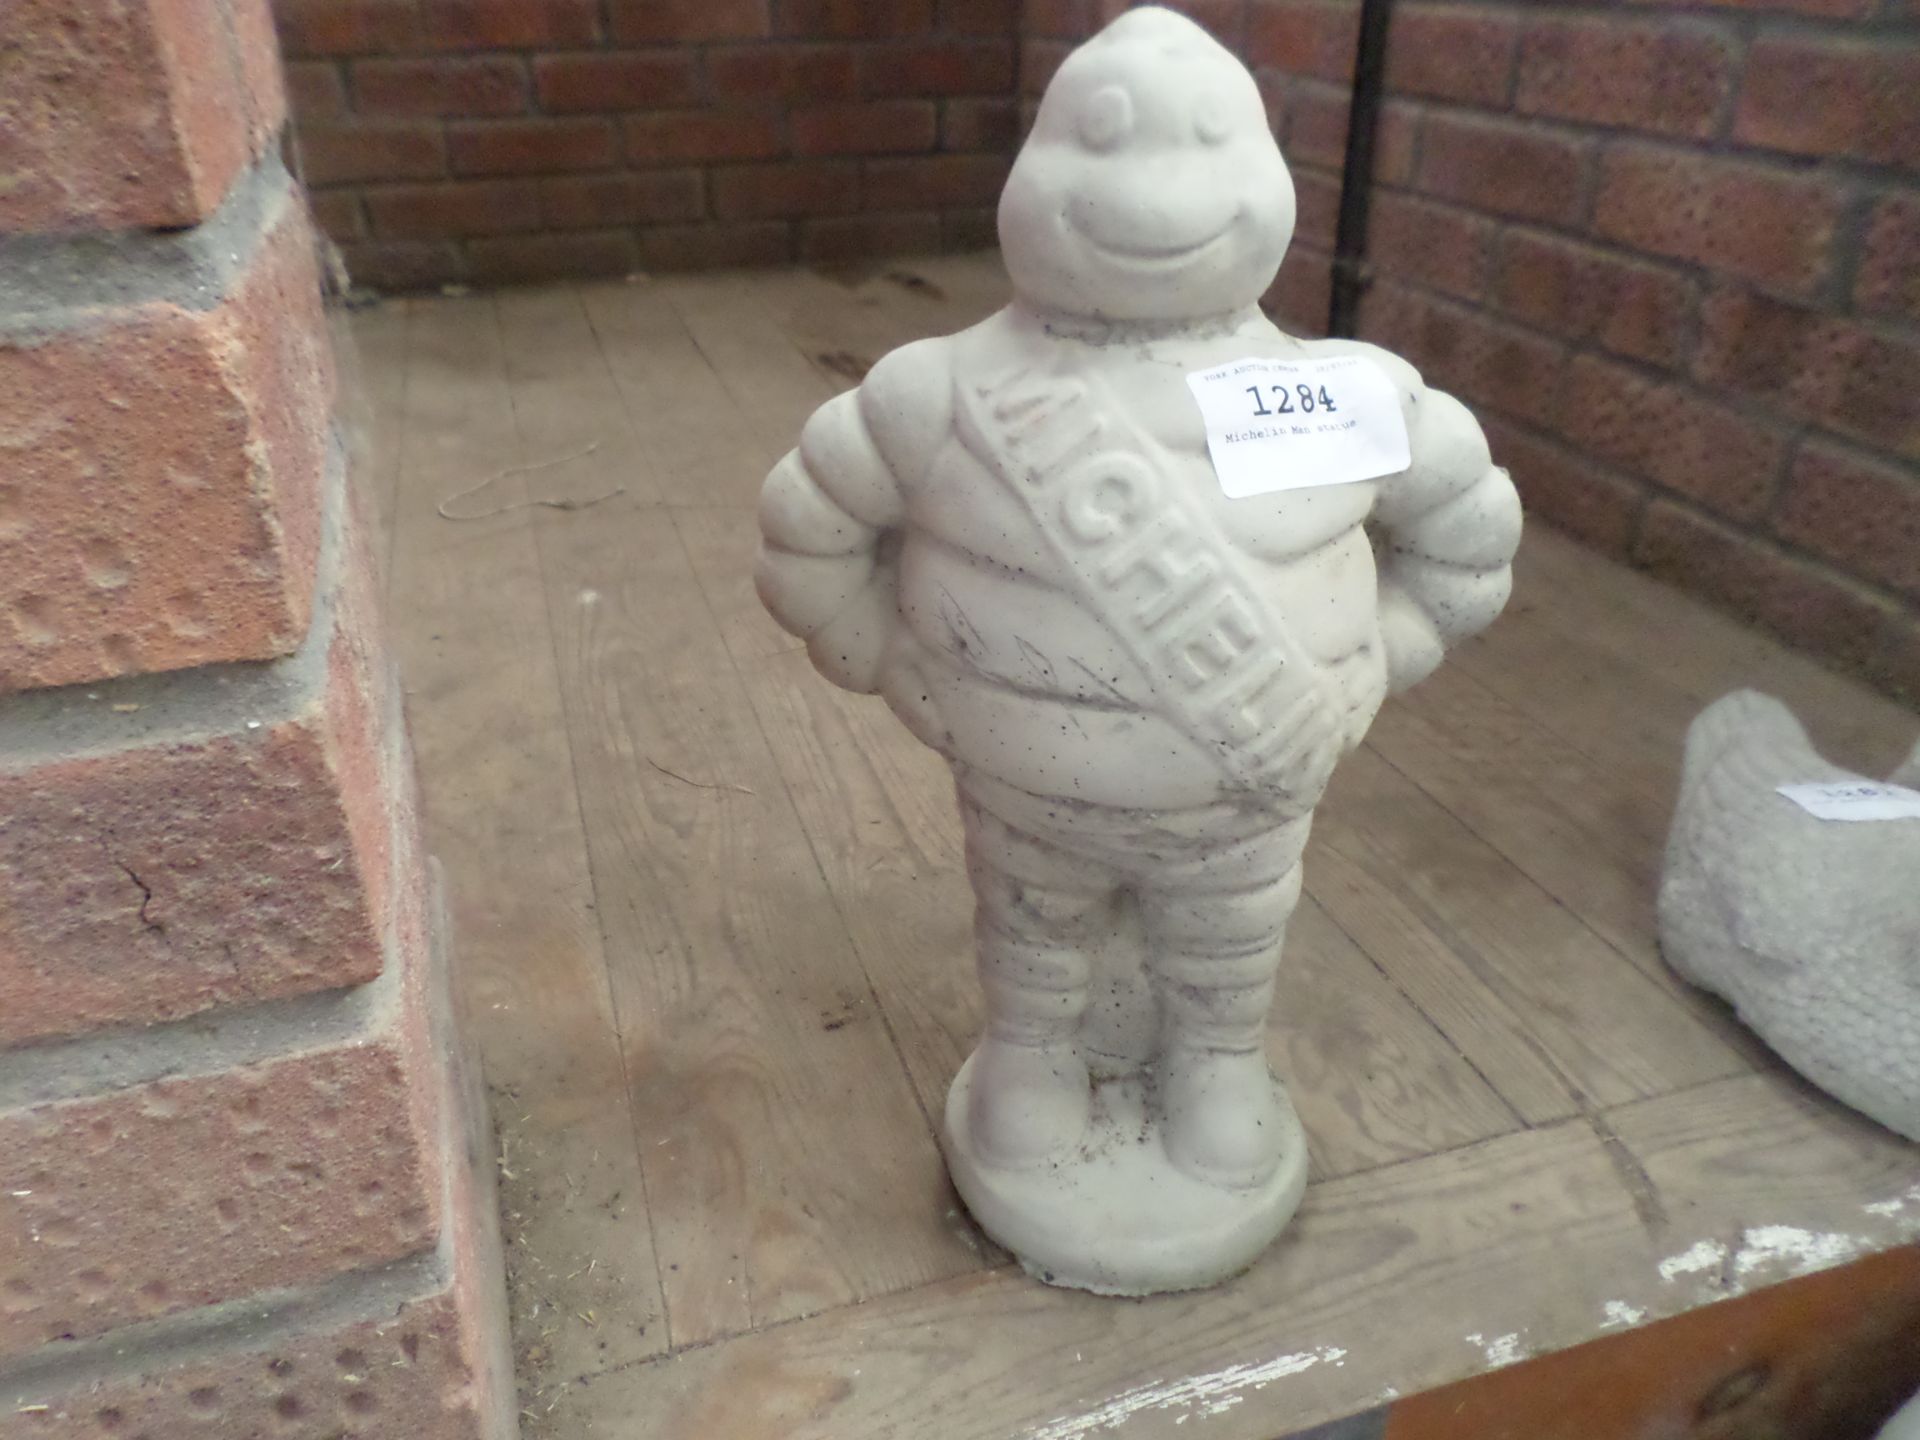 Michelin Man statue